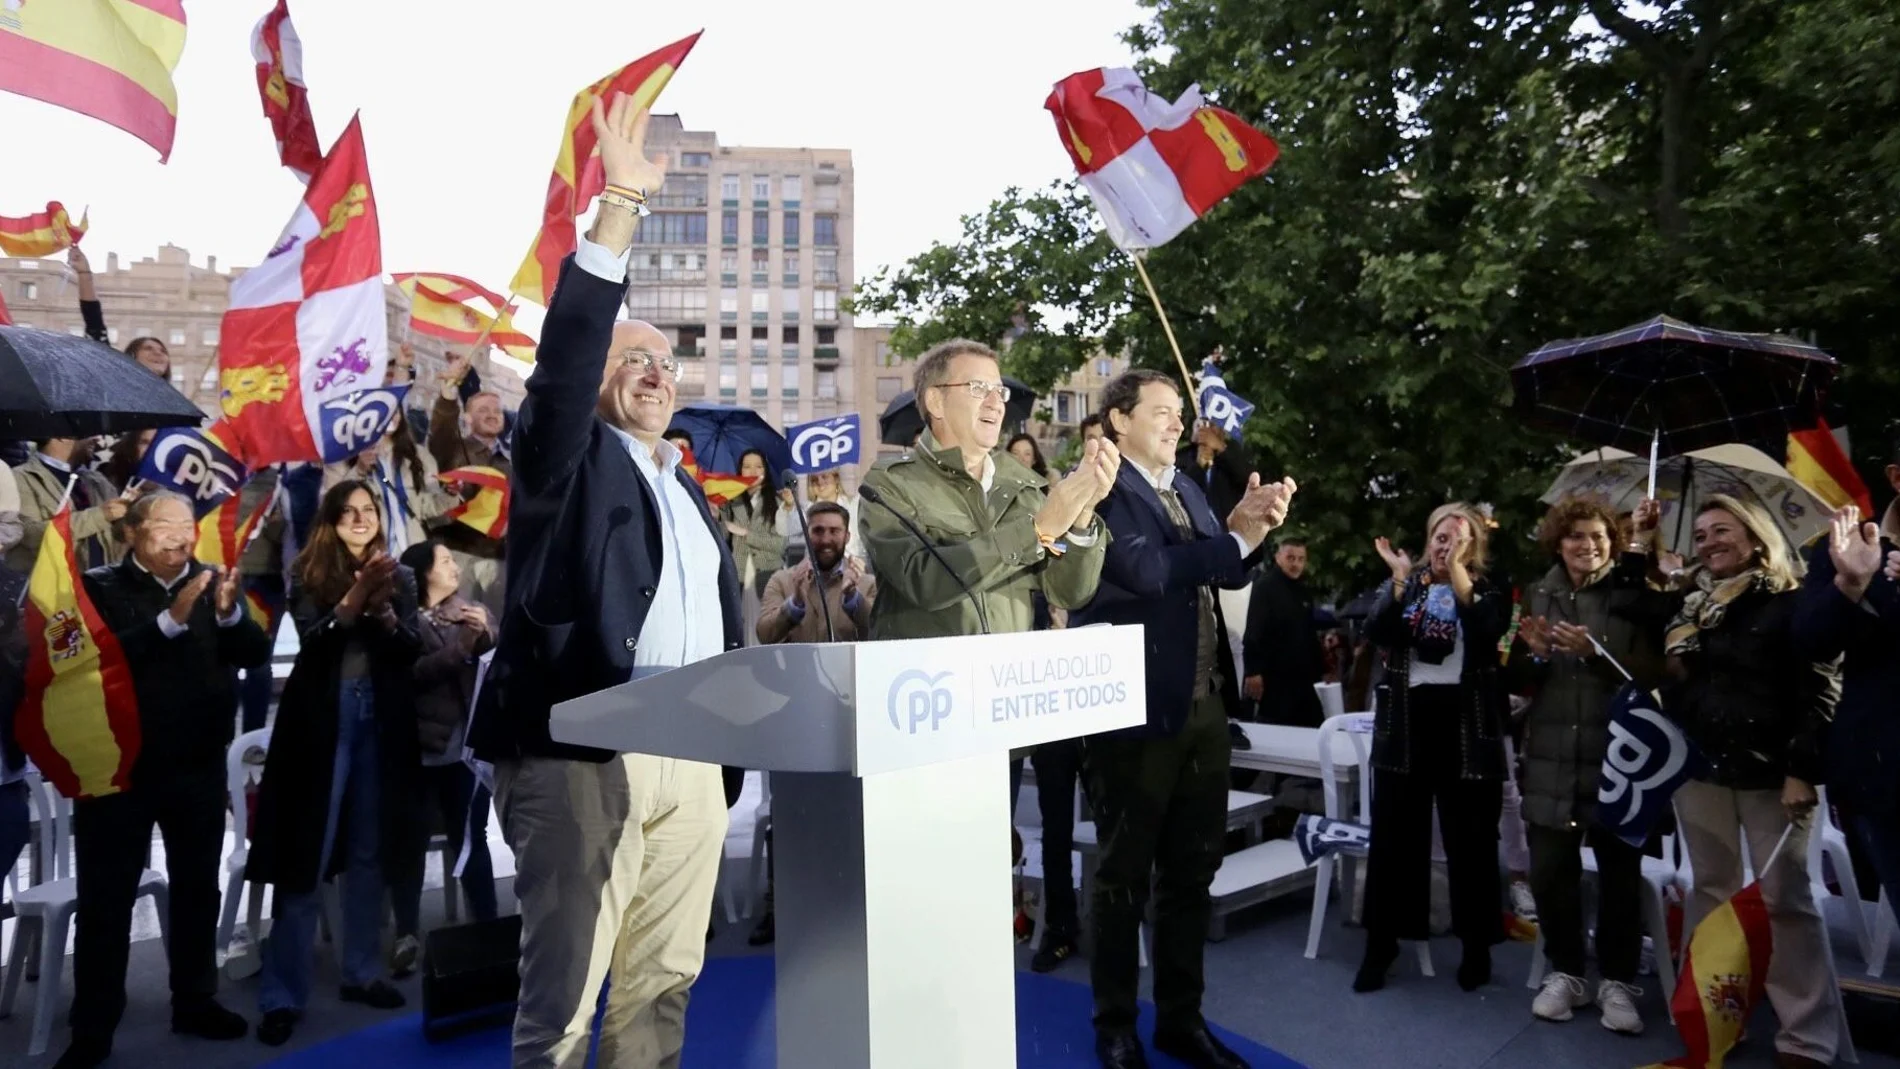 Feijóo, Mañueco y Carnero saludan a los asistentes al acto de campaña en Valladolid